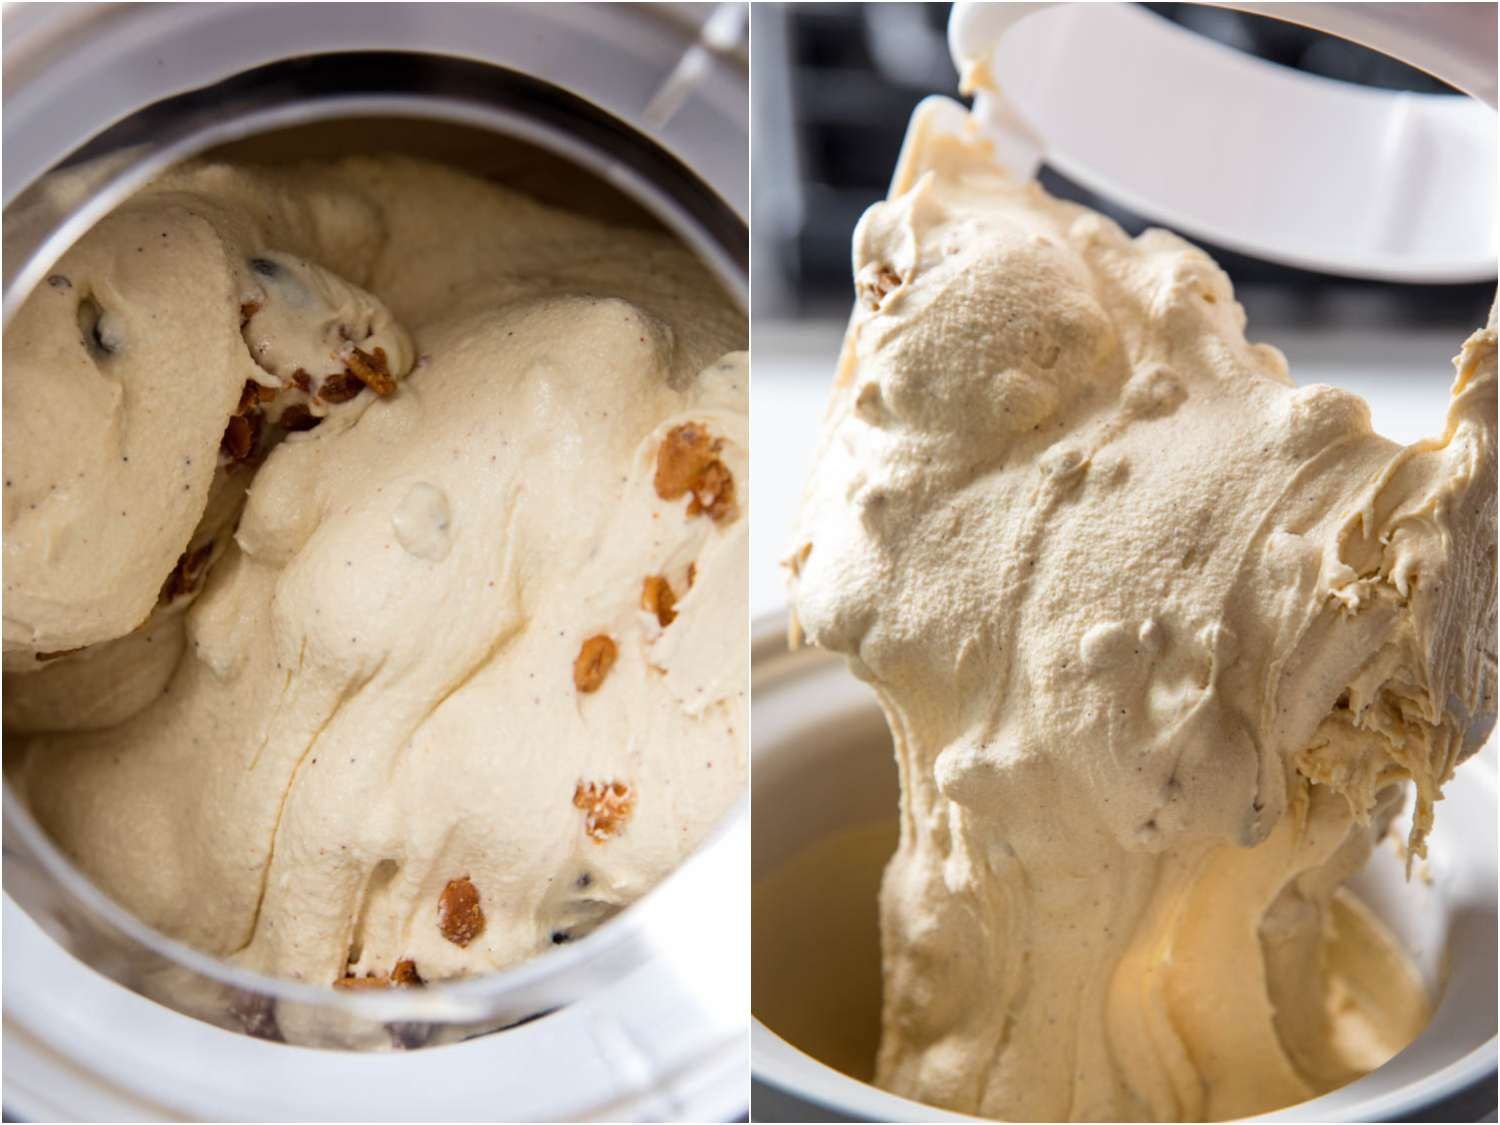 分裂图像显示烤燕麦块被添加到搅拌冰淇淋机。